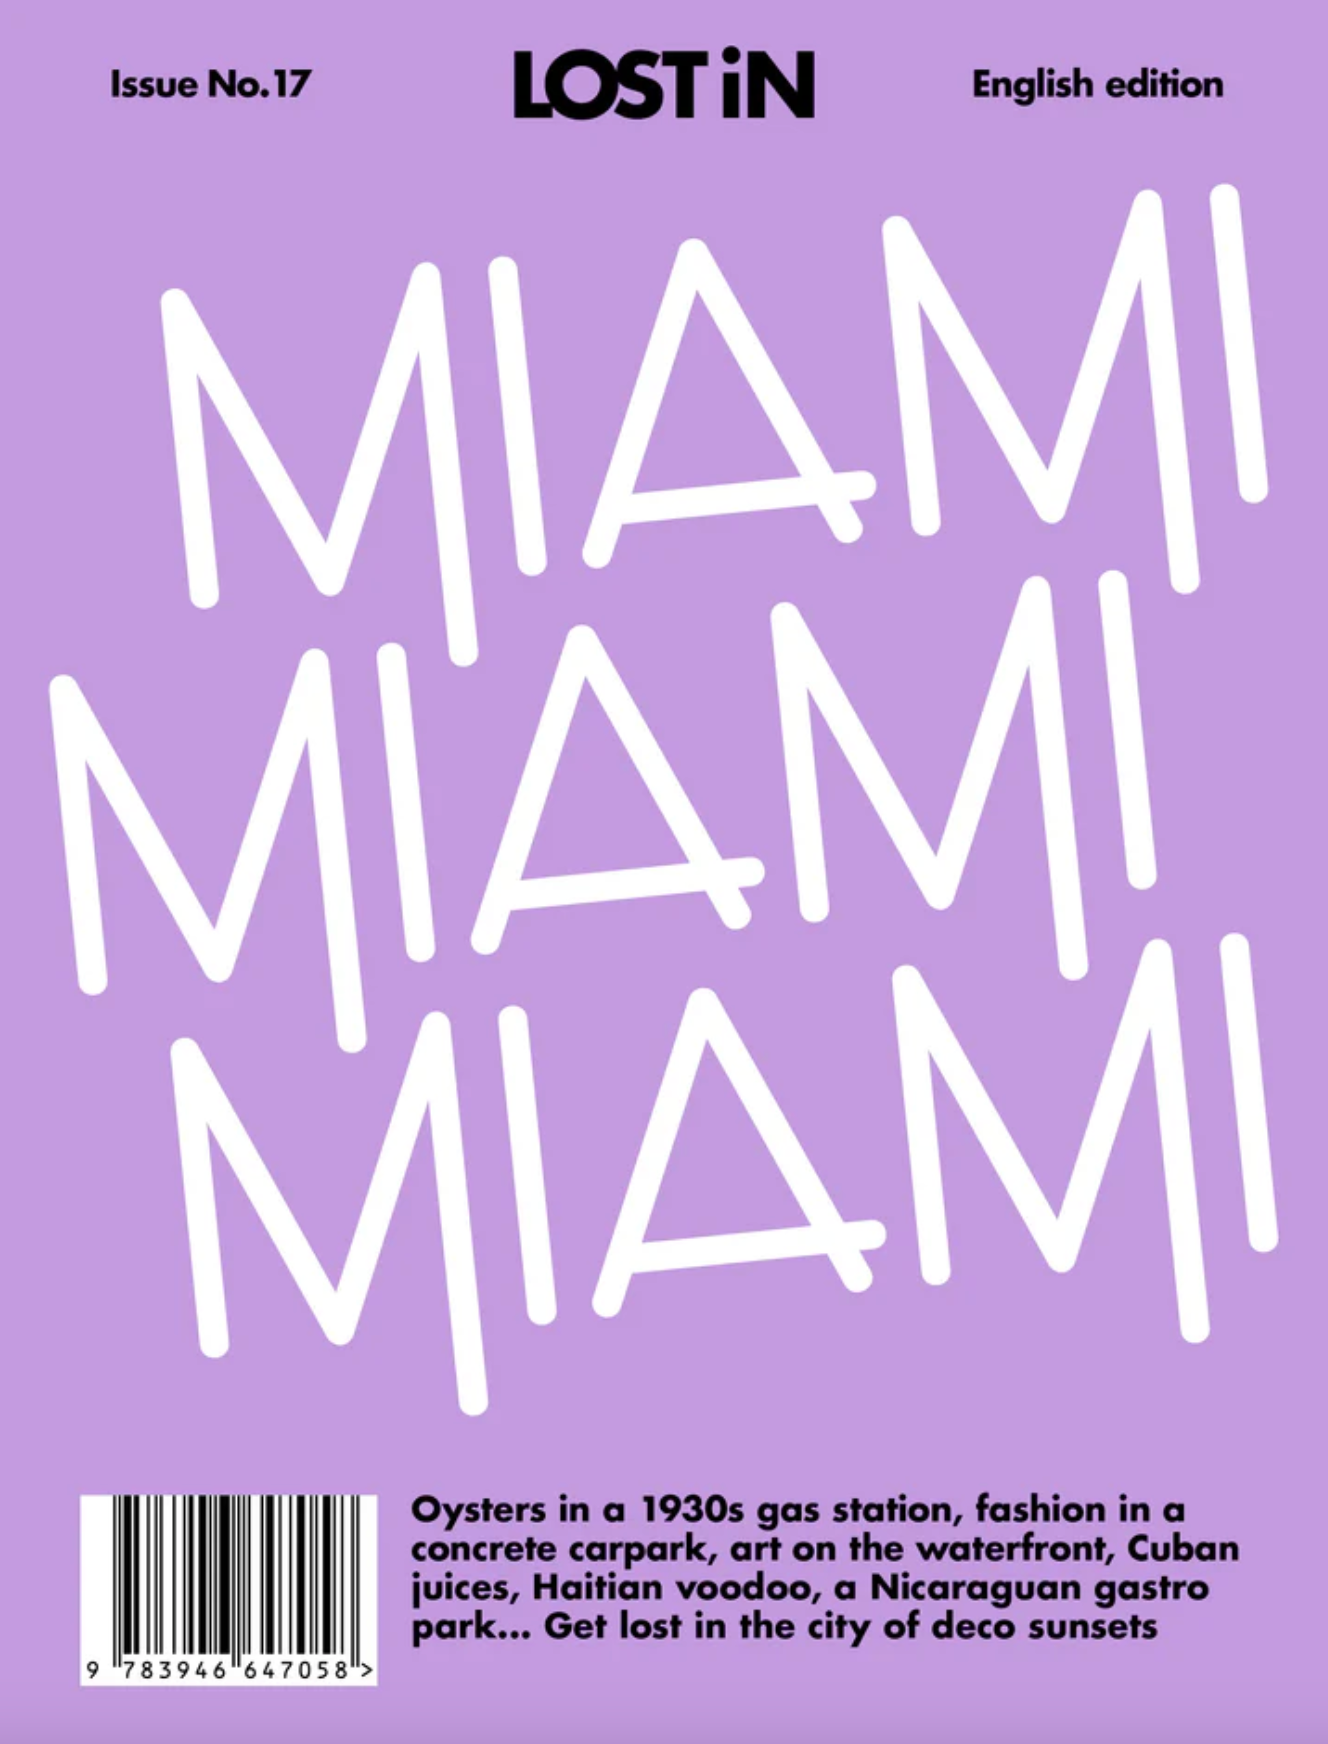 LOST iN: Miami